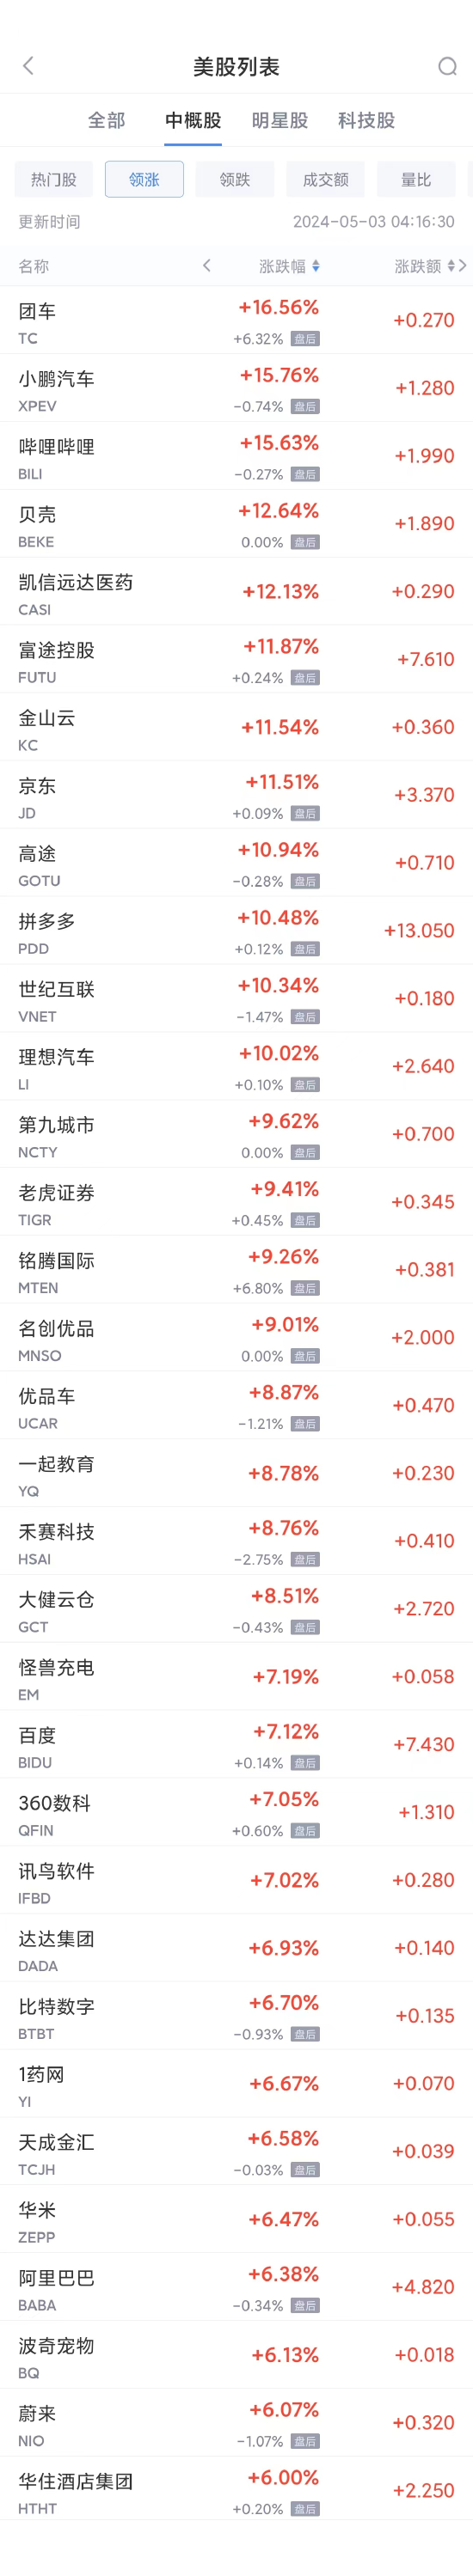 周四热门中概股普涨 阿里涨6.4%，京东涨11.5%，小鹏涨15.8%